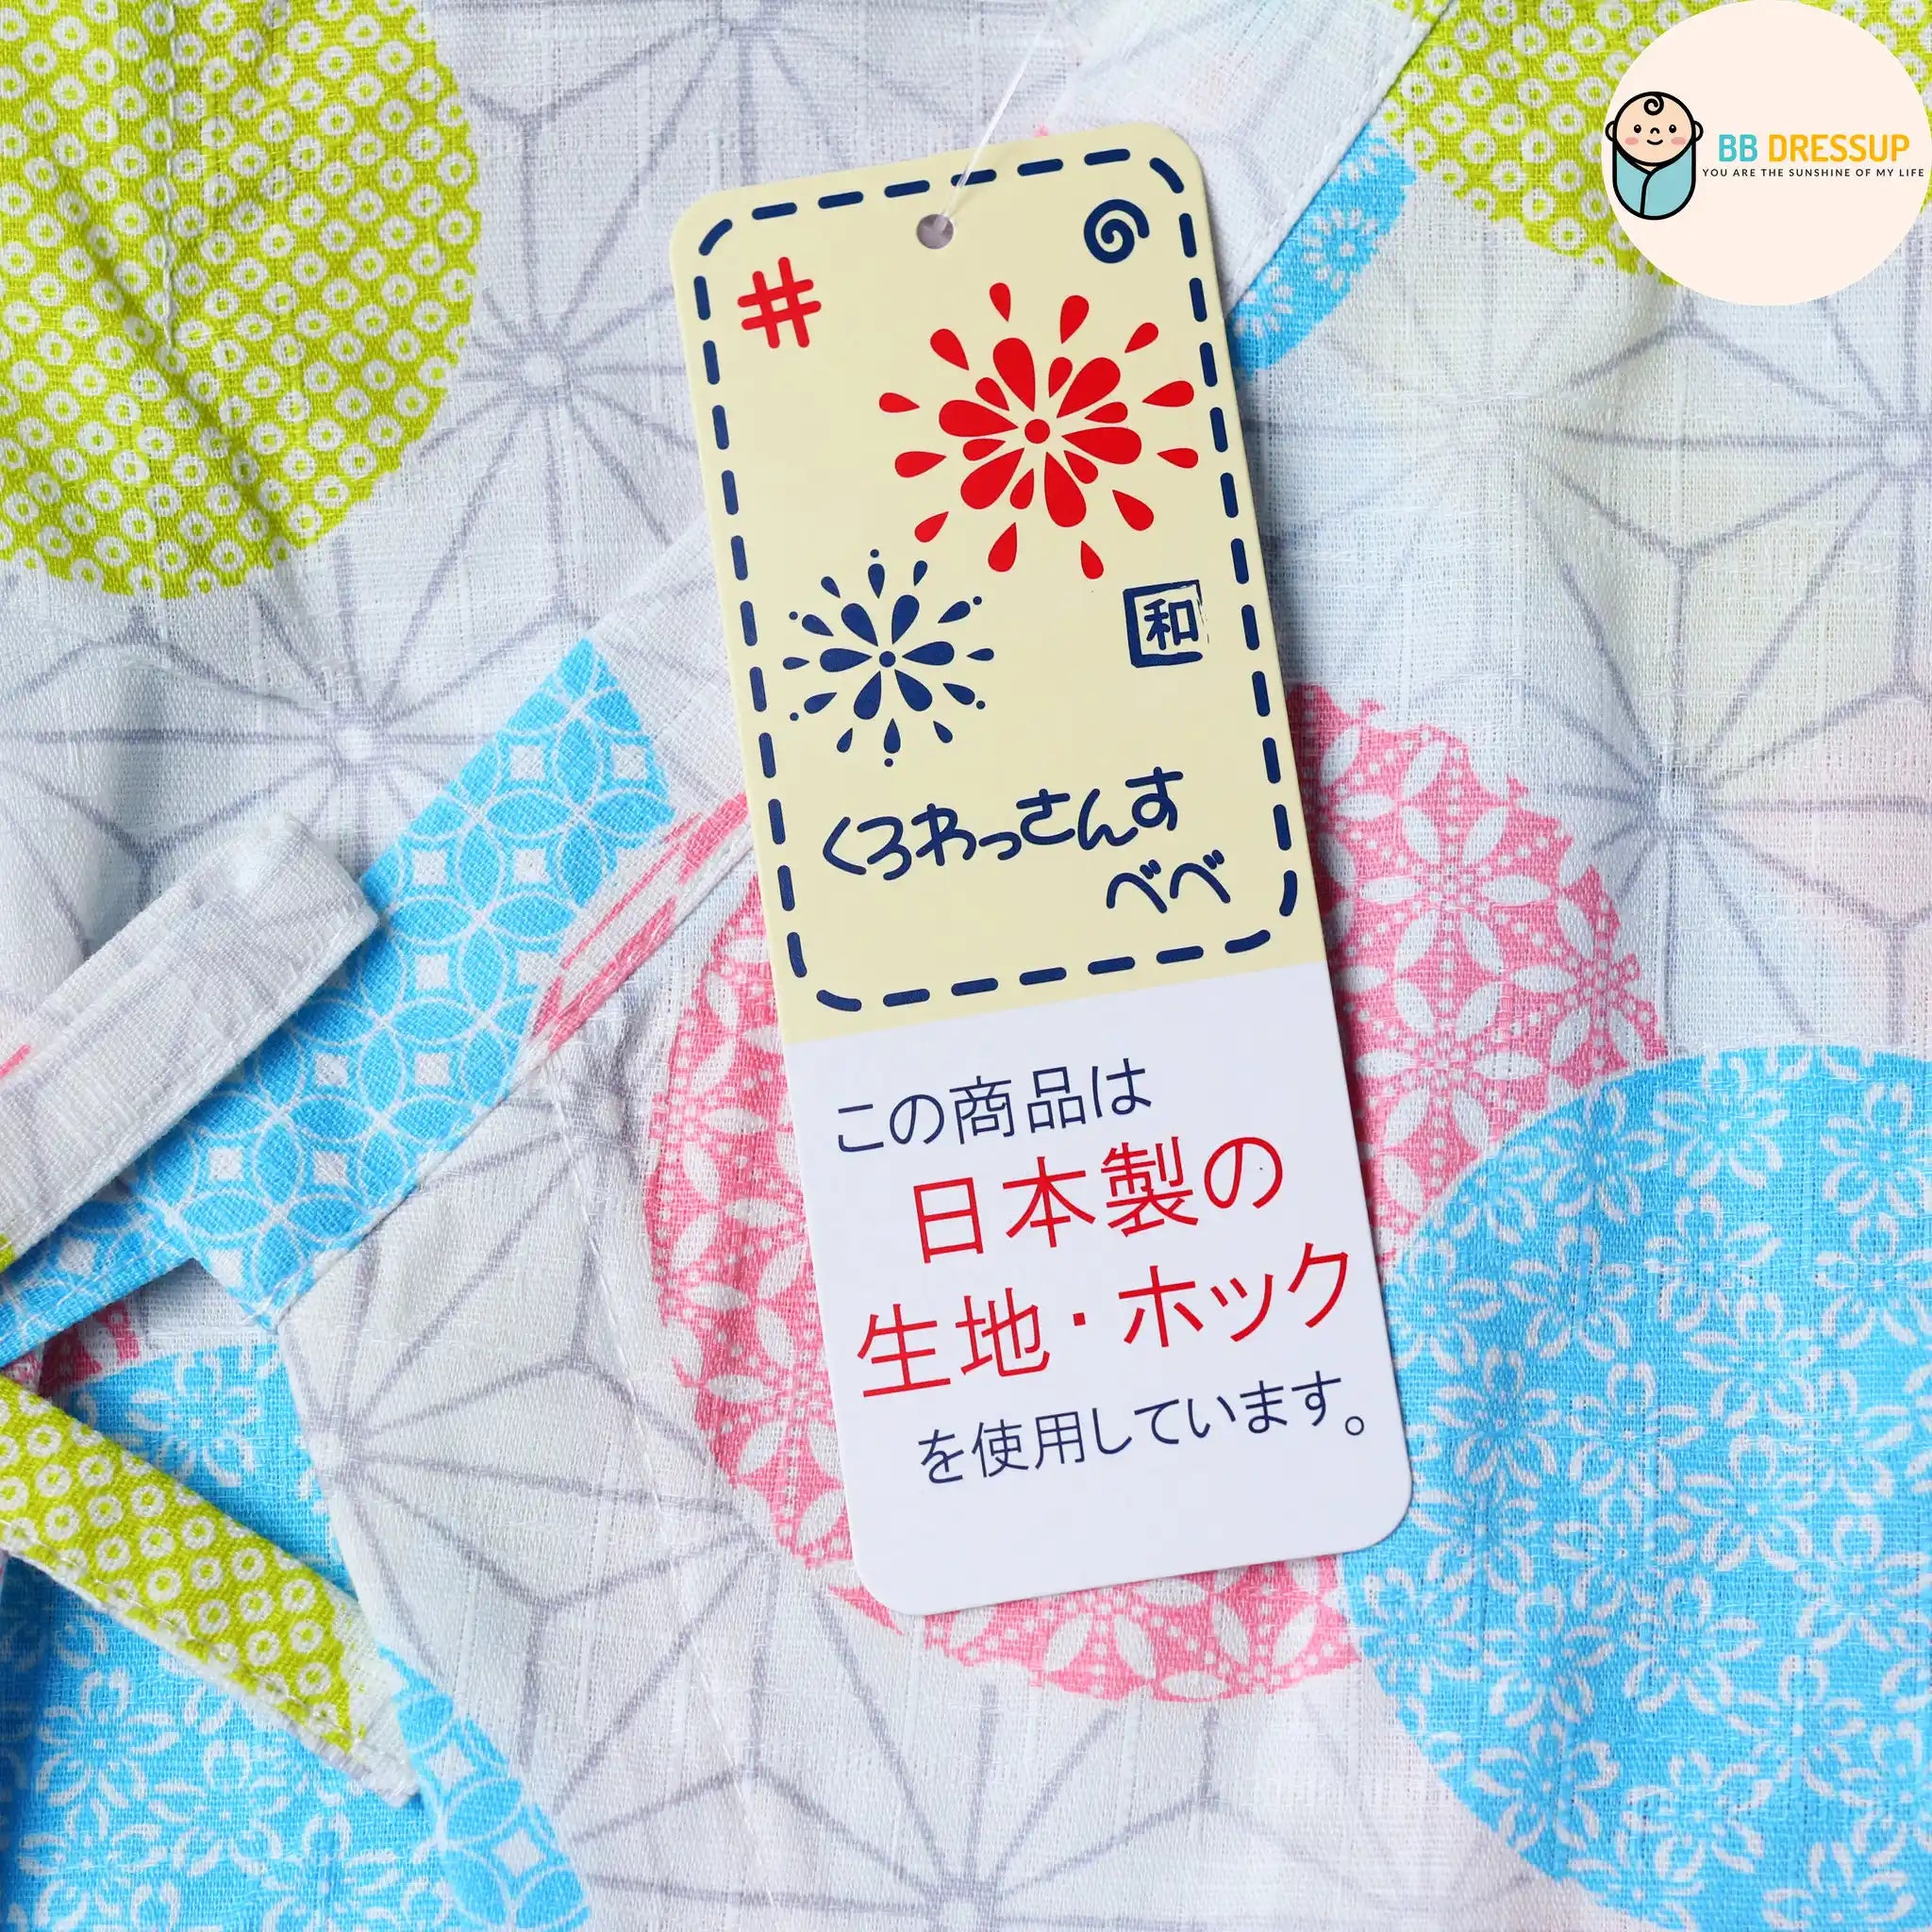 日本直送 東商店嬰兒白色圓形 日本和服浴衣嬰兒連身衣 - BB Dressup